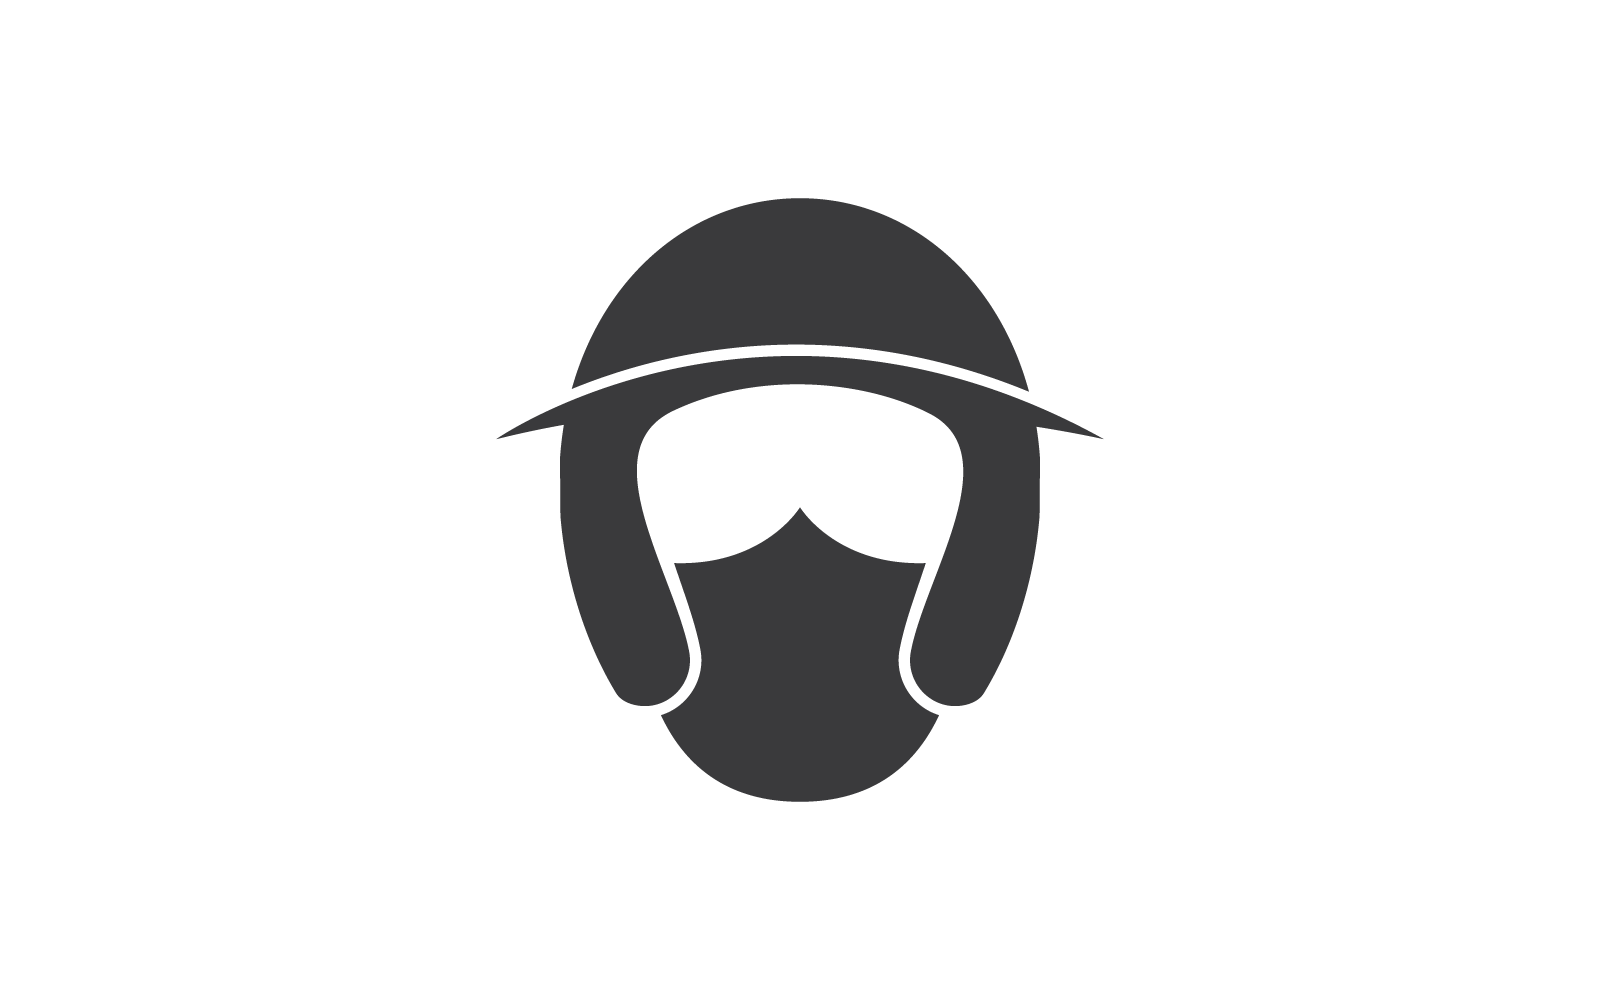 Motorcycle helmet logo vector icon design